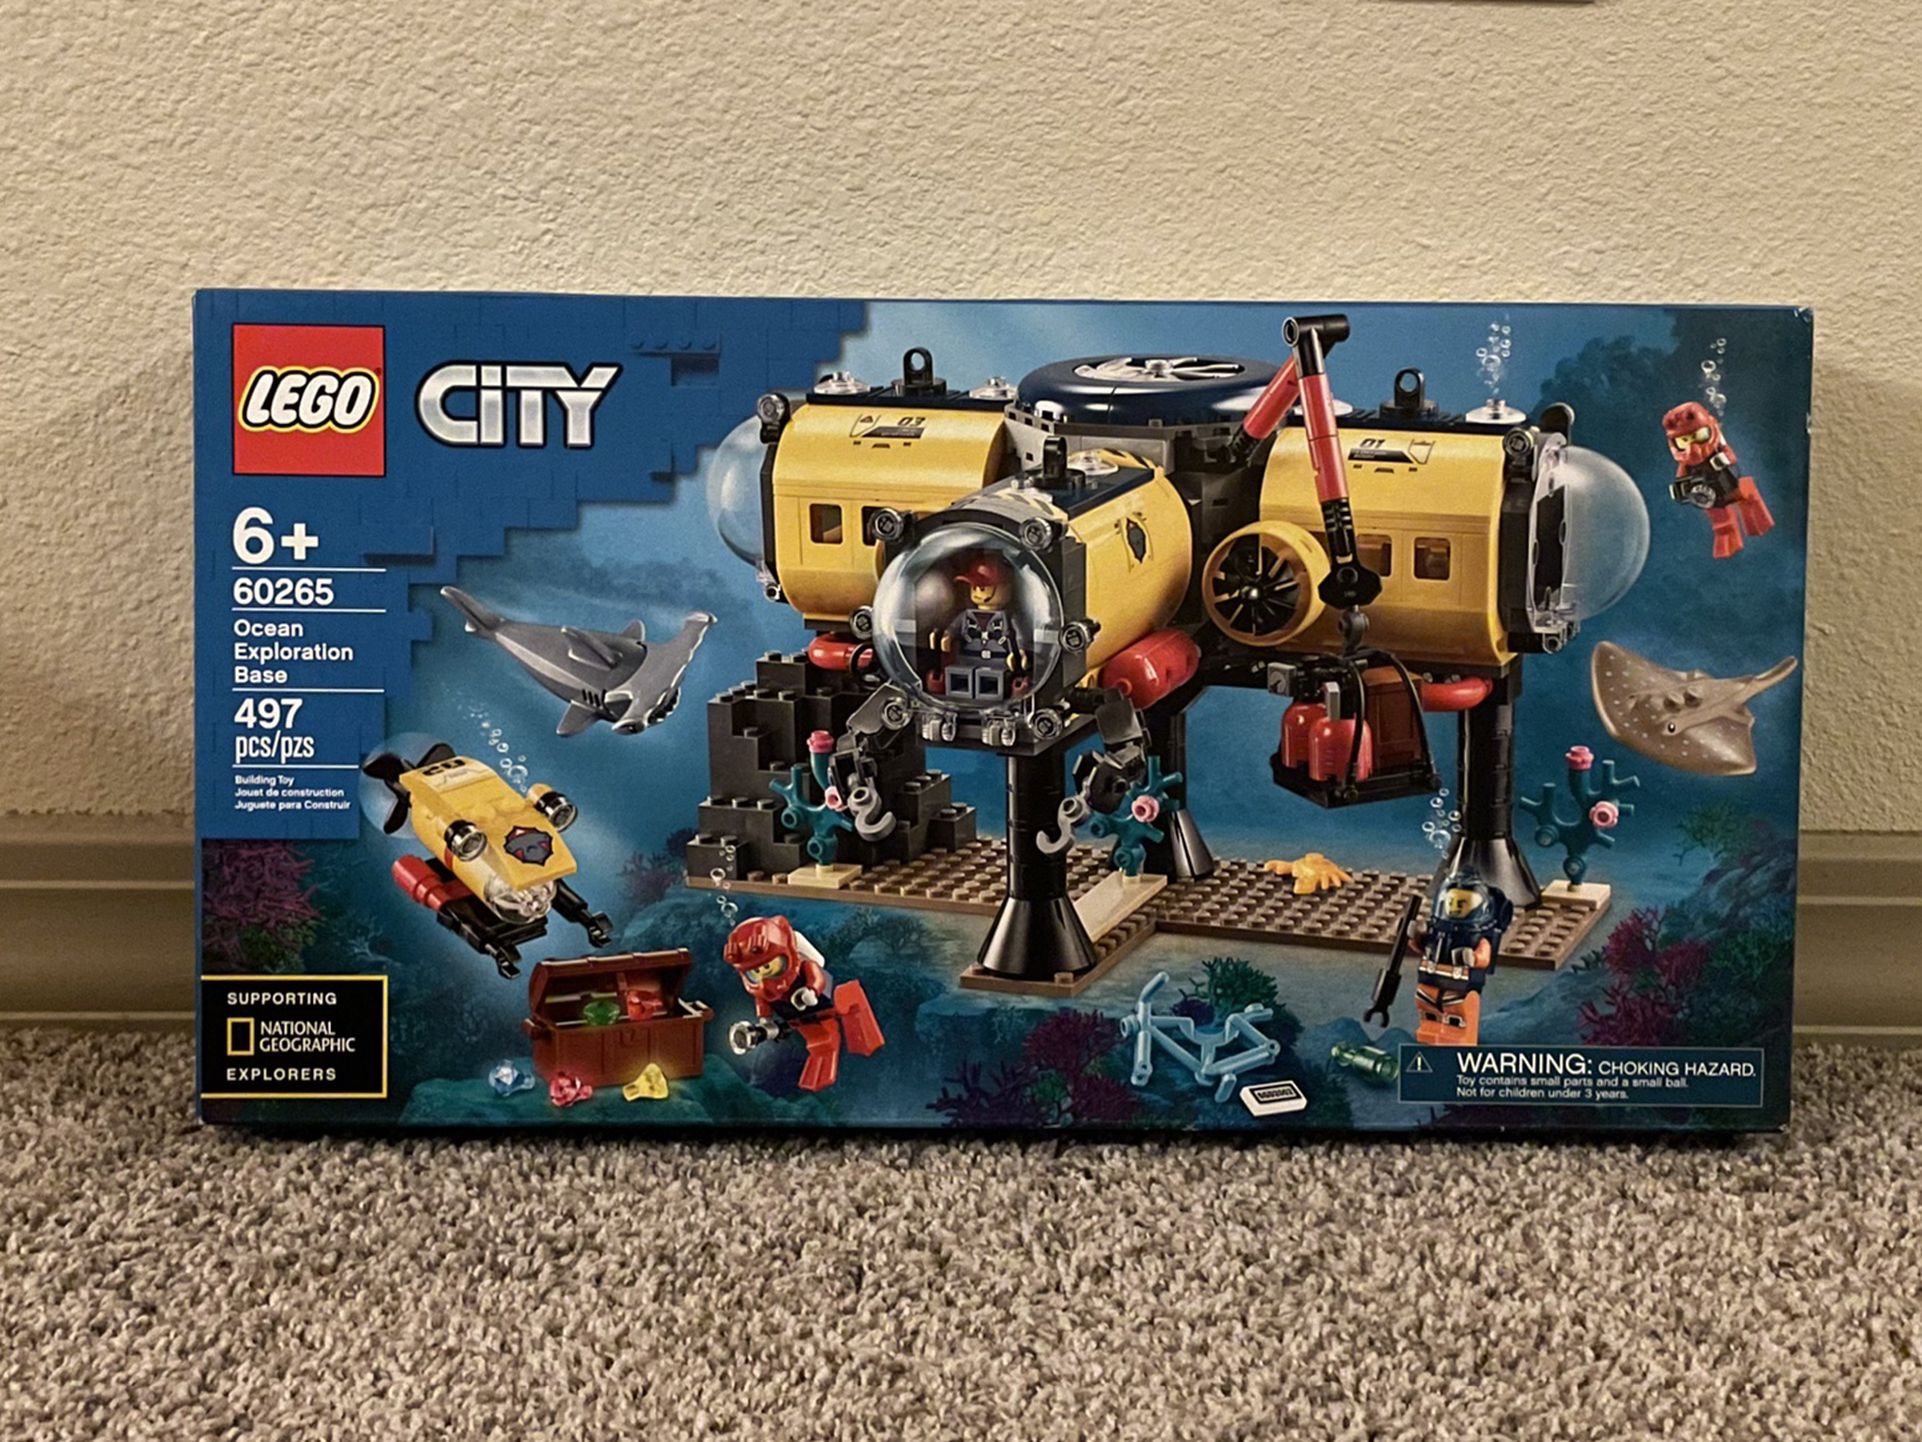 LEGO 60265 City Ocean Exploration Base 497pcs New